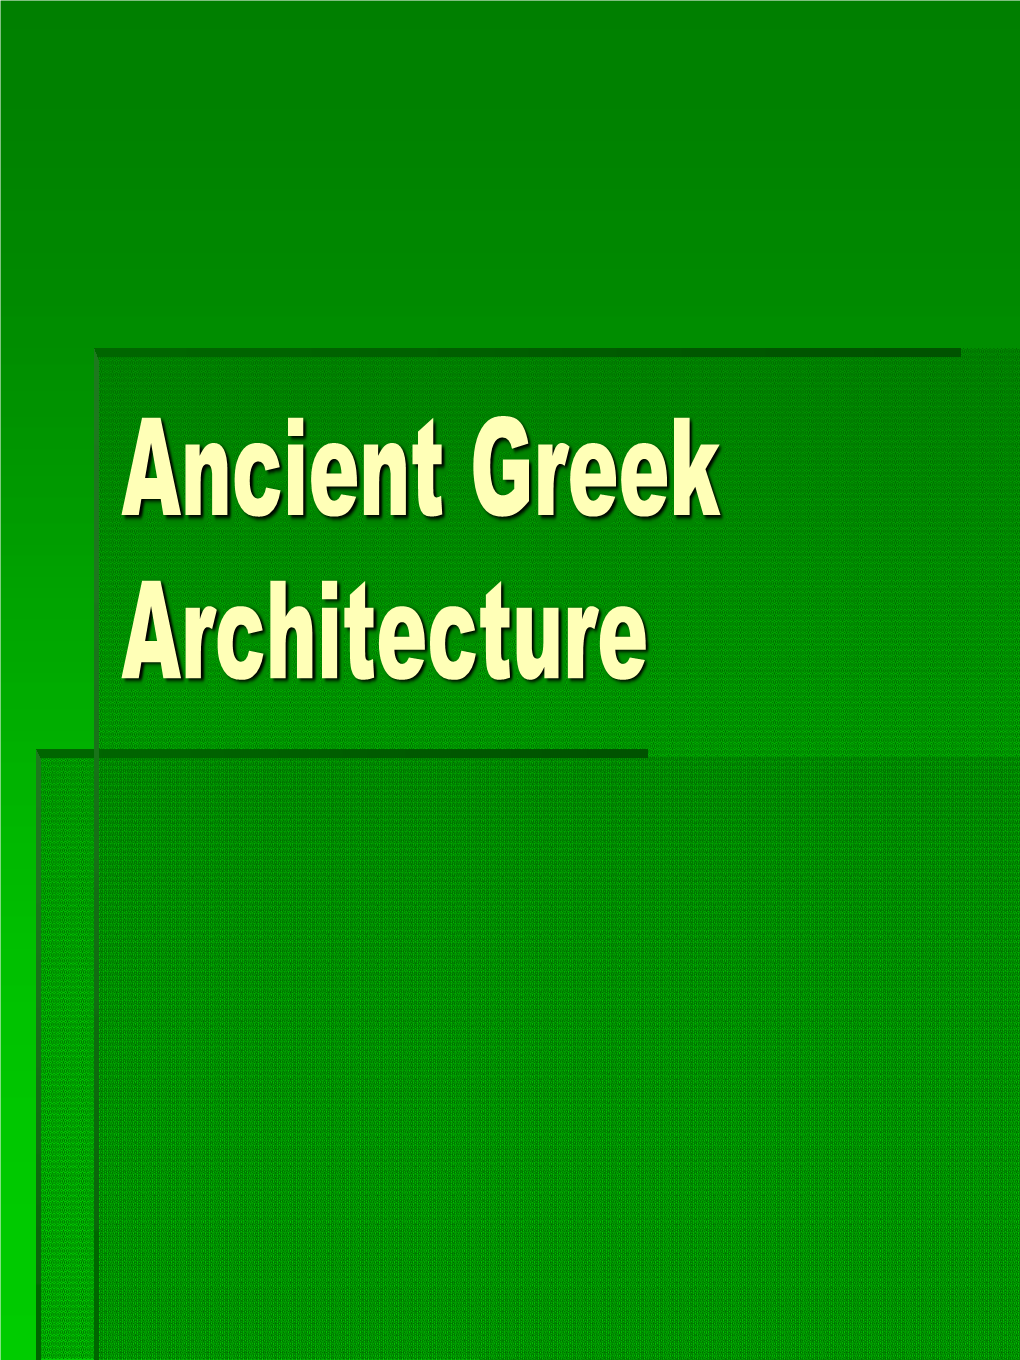 Ancient Greek Architecture Early Greek Civilizations - Mycenaeans ƒ Lions Gate